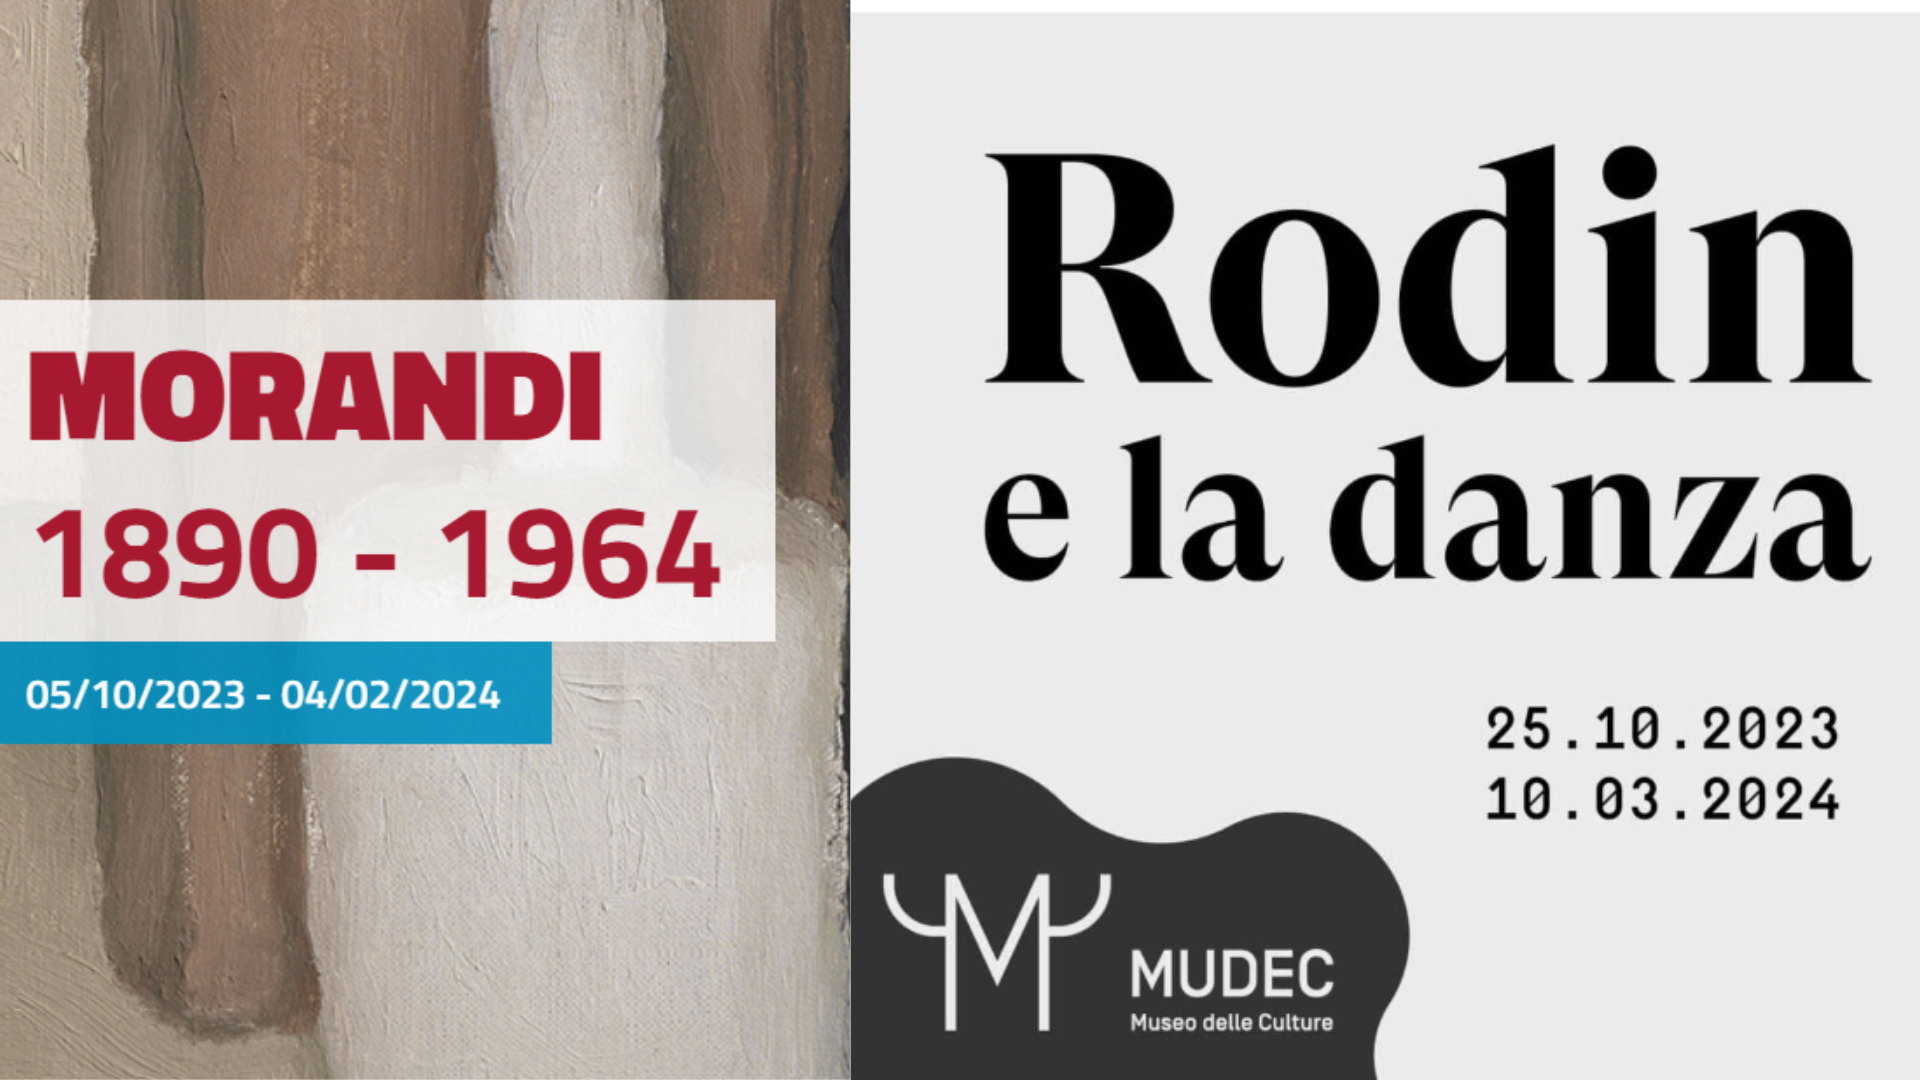 Al momento stai visualizzando Mostre Anisa 2023: Morandi e Rodin